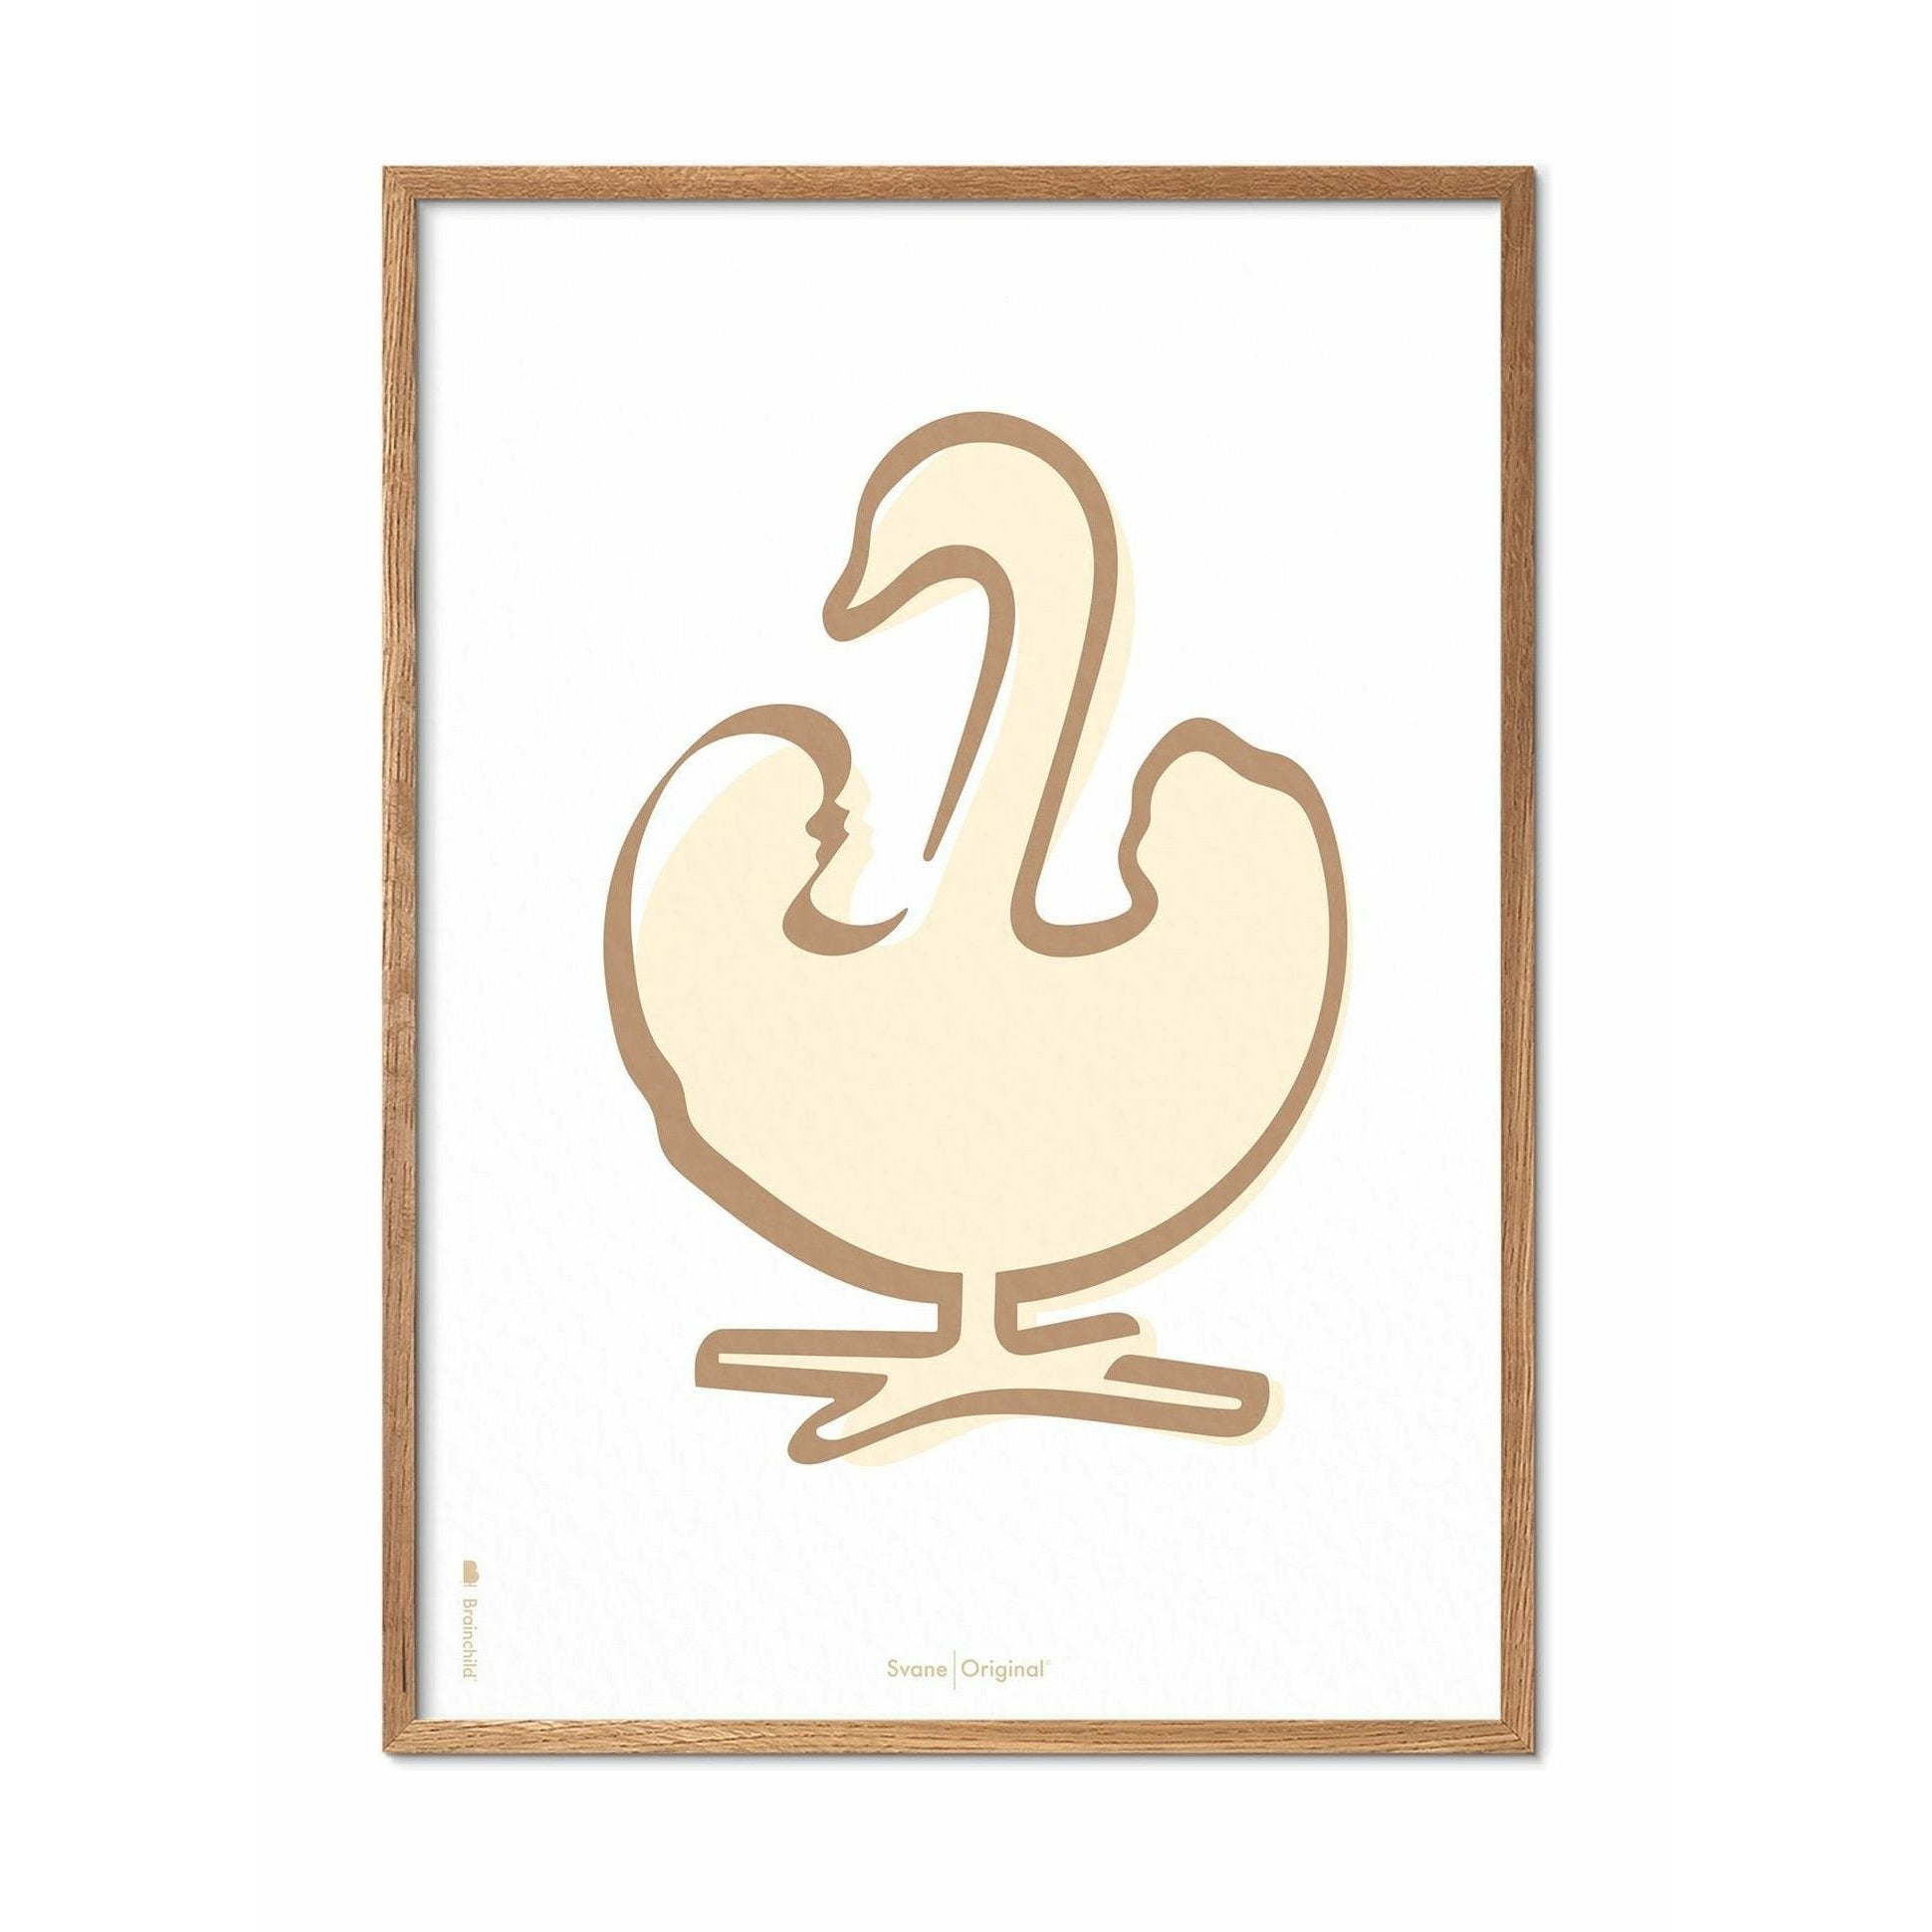 Plakát labutí s labutí, rám vyrobený z lehkého dřeva 50x70 cm, bílé pozadí